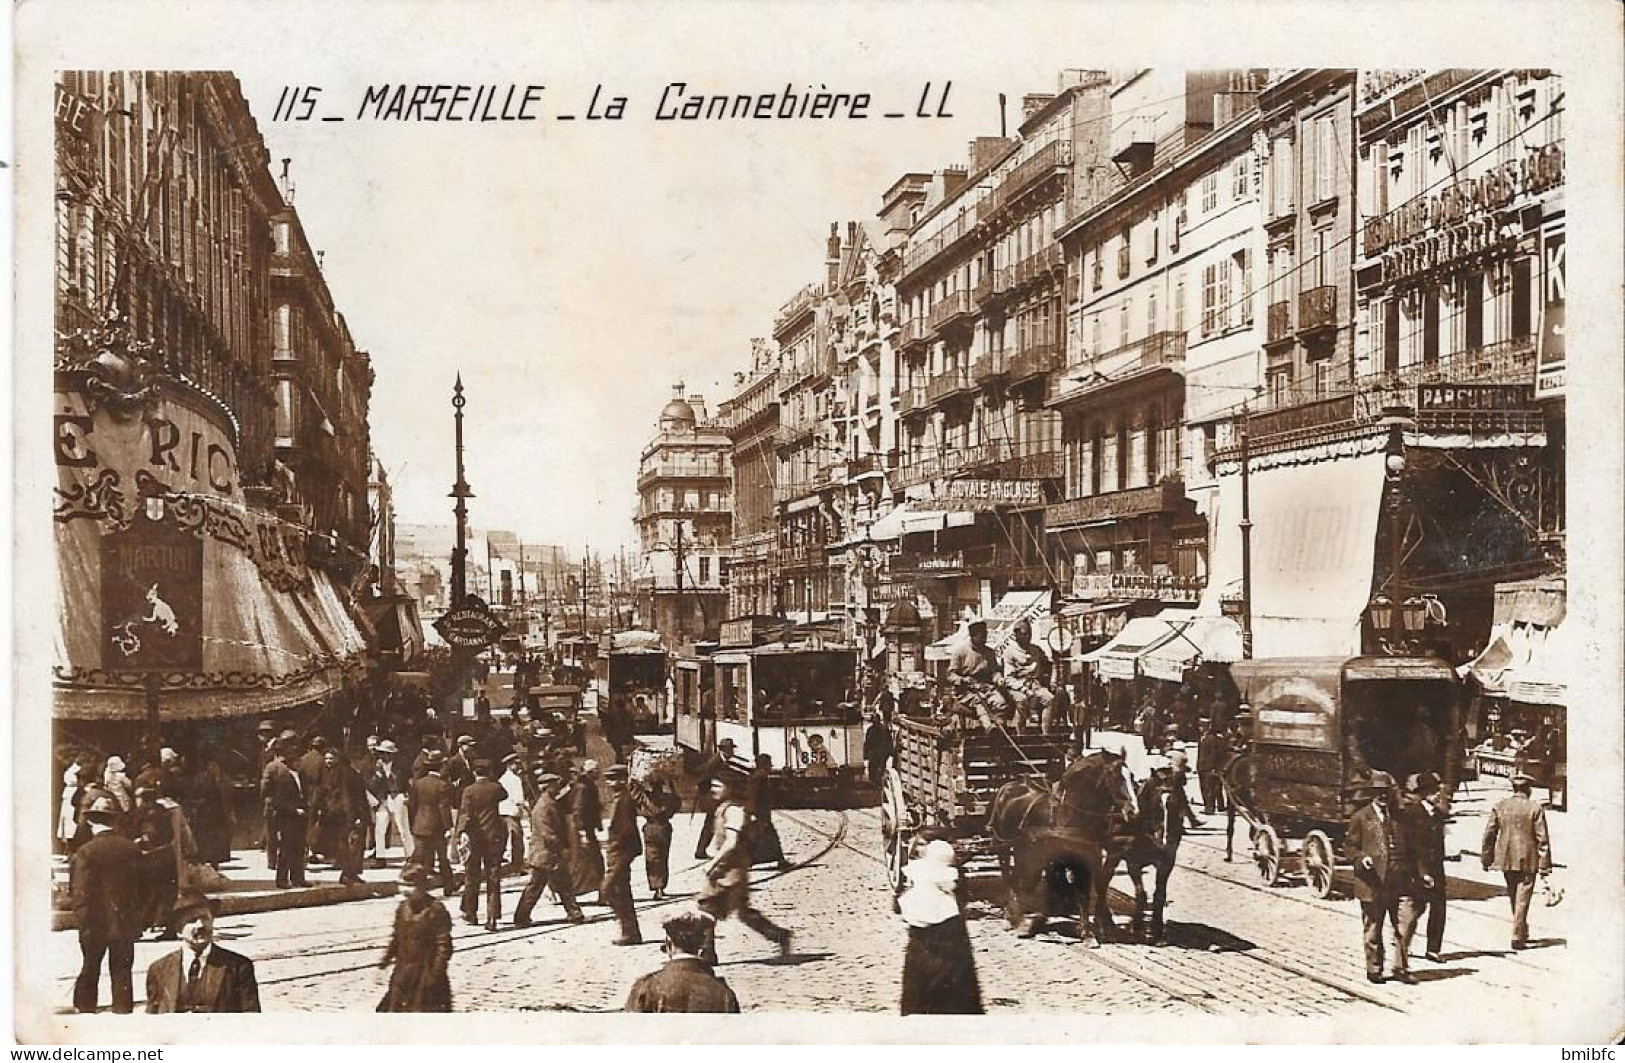 MARSEILLE - La Cannebière - The Canebière, City Centre